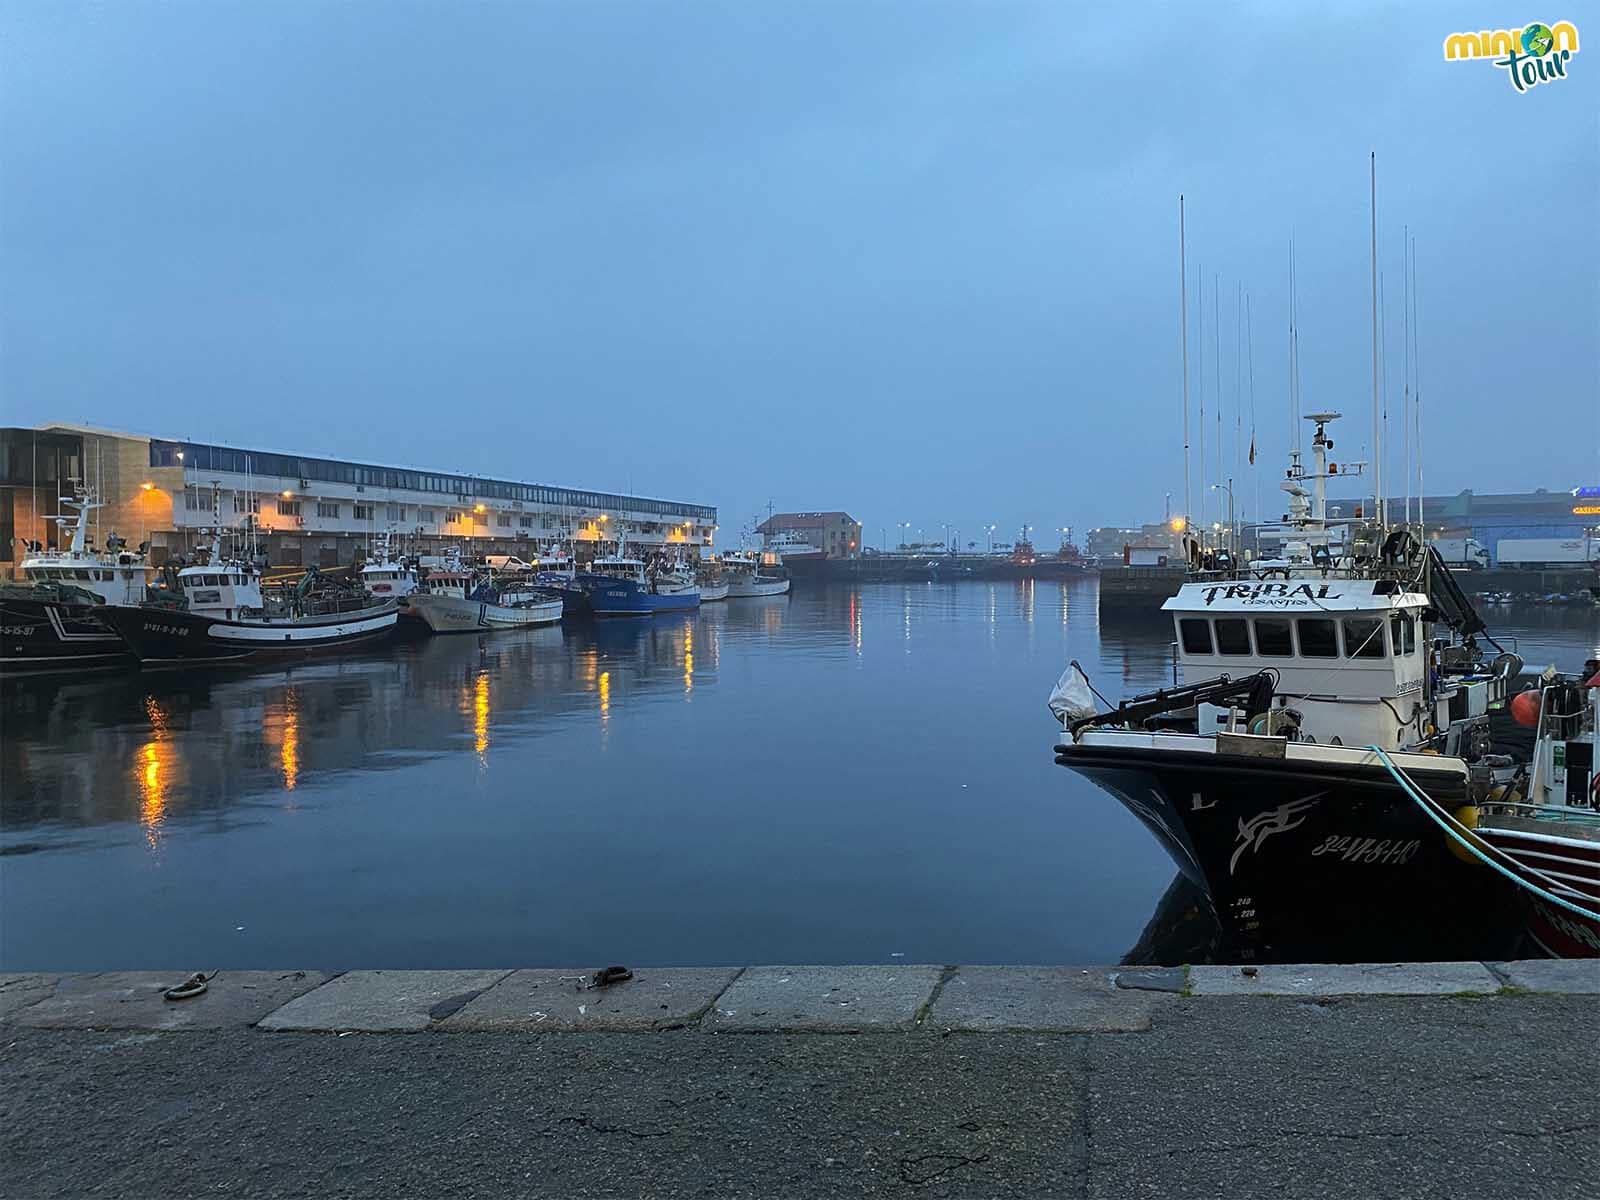 Visita guiada al Puerto Pesquero de Vigo en las Jornadas de GaliciaTB